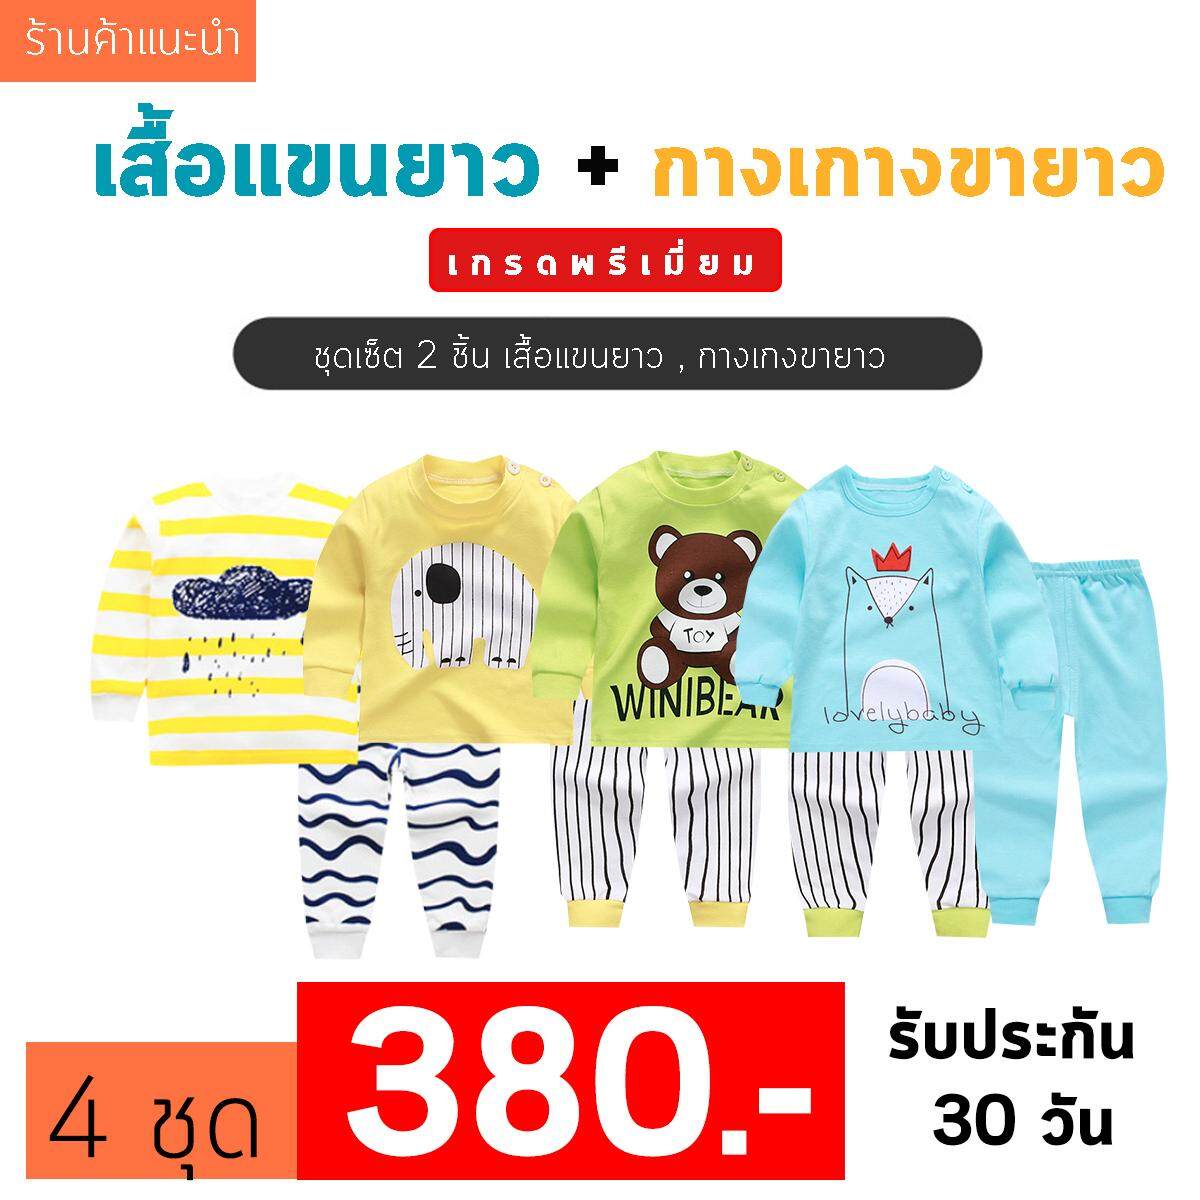 ราคา ❤️Baby Thailand ชุดนอนเด็กโต รับประกันคุณภาพสินค้า ชุดนอนเด็กแขนยาว [เซ็ต 2 ชิ้น เสื้อแขนยาว+กางเกงขายาว] ใส่สบายเนื้อผ้านิ่ม ชุดนอนเด็ก เสื้อผ้าเด็ก เสื้อผ้าเด็กโต ชุดนอนน่ารัก ชุดนอนลายการ์ตูน